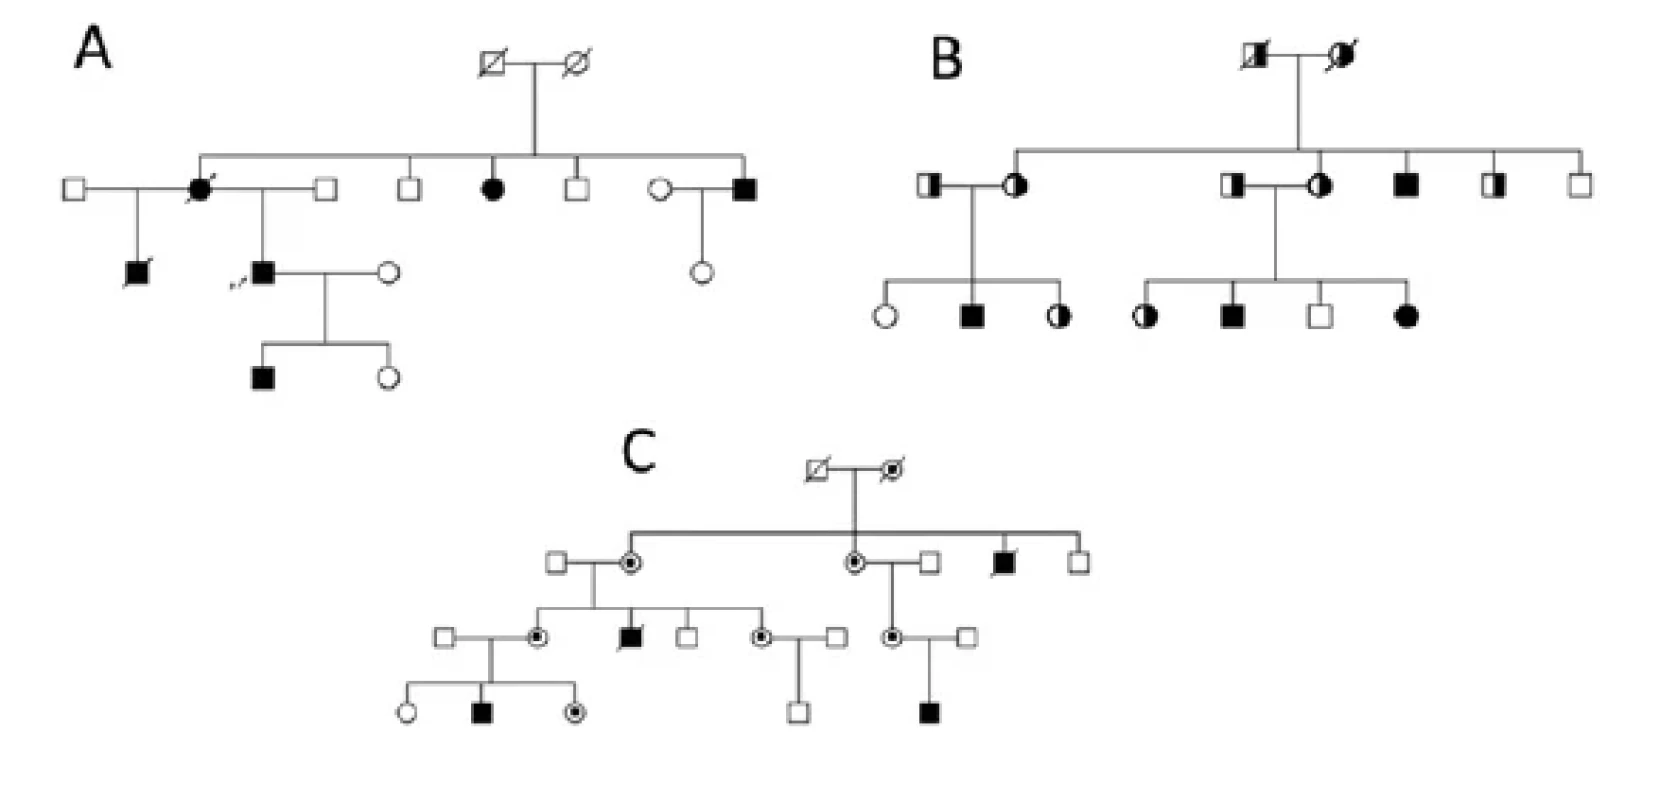 Typické rodokmeny rodin s různými druhy dědičnosti. A – autozomálně dominantní typ dědičnosti, B – autozomálně recesivní typ a C – X-vázaný
typ dědičnosti. Pacient je označen černě, přenašeč mutace/varianty je označen částečným zabarvením obrazce